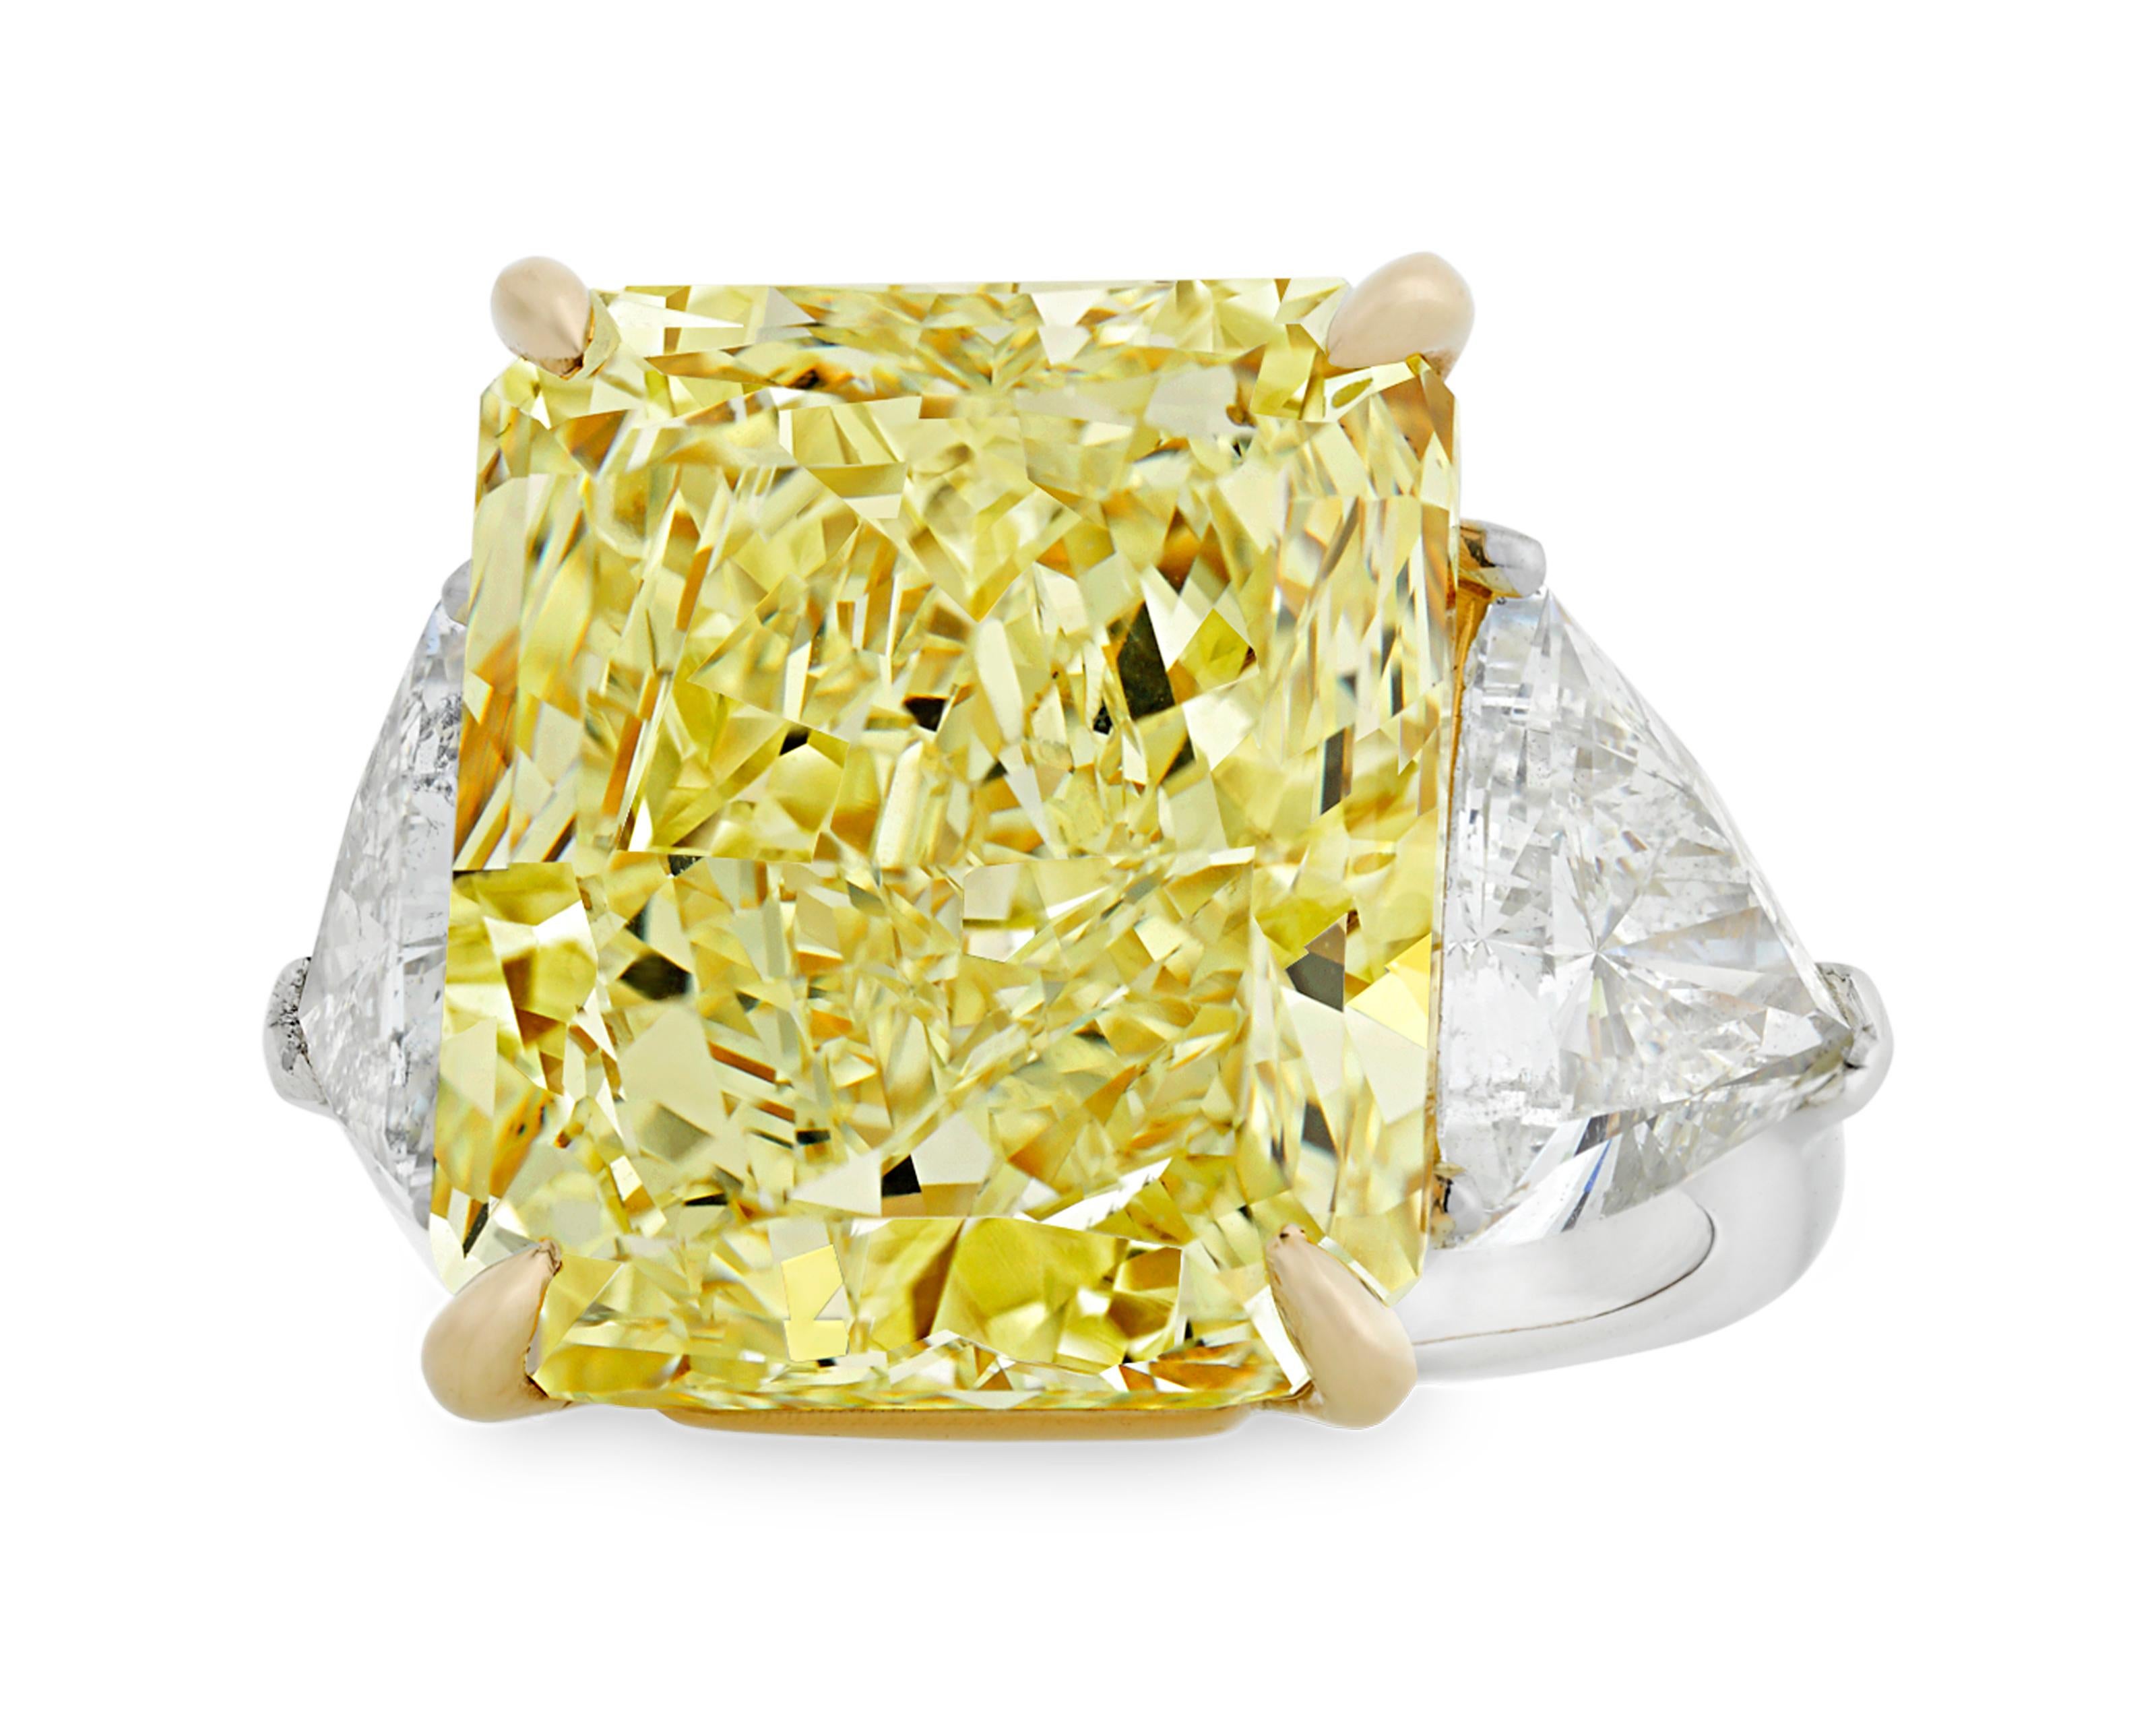 Dieser monumentale fancy-gelbe Diamant von 20,28 Karat zählt zu den seltensten und begehrtesten Edelsteinen überhaupt. Der seltene Stein ist vom Gemological Institute of America (GIA) als natürliches Fancy-Gelb zertifiziert. Sein außergewöhnlicher